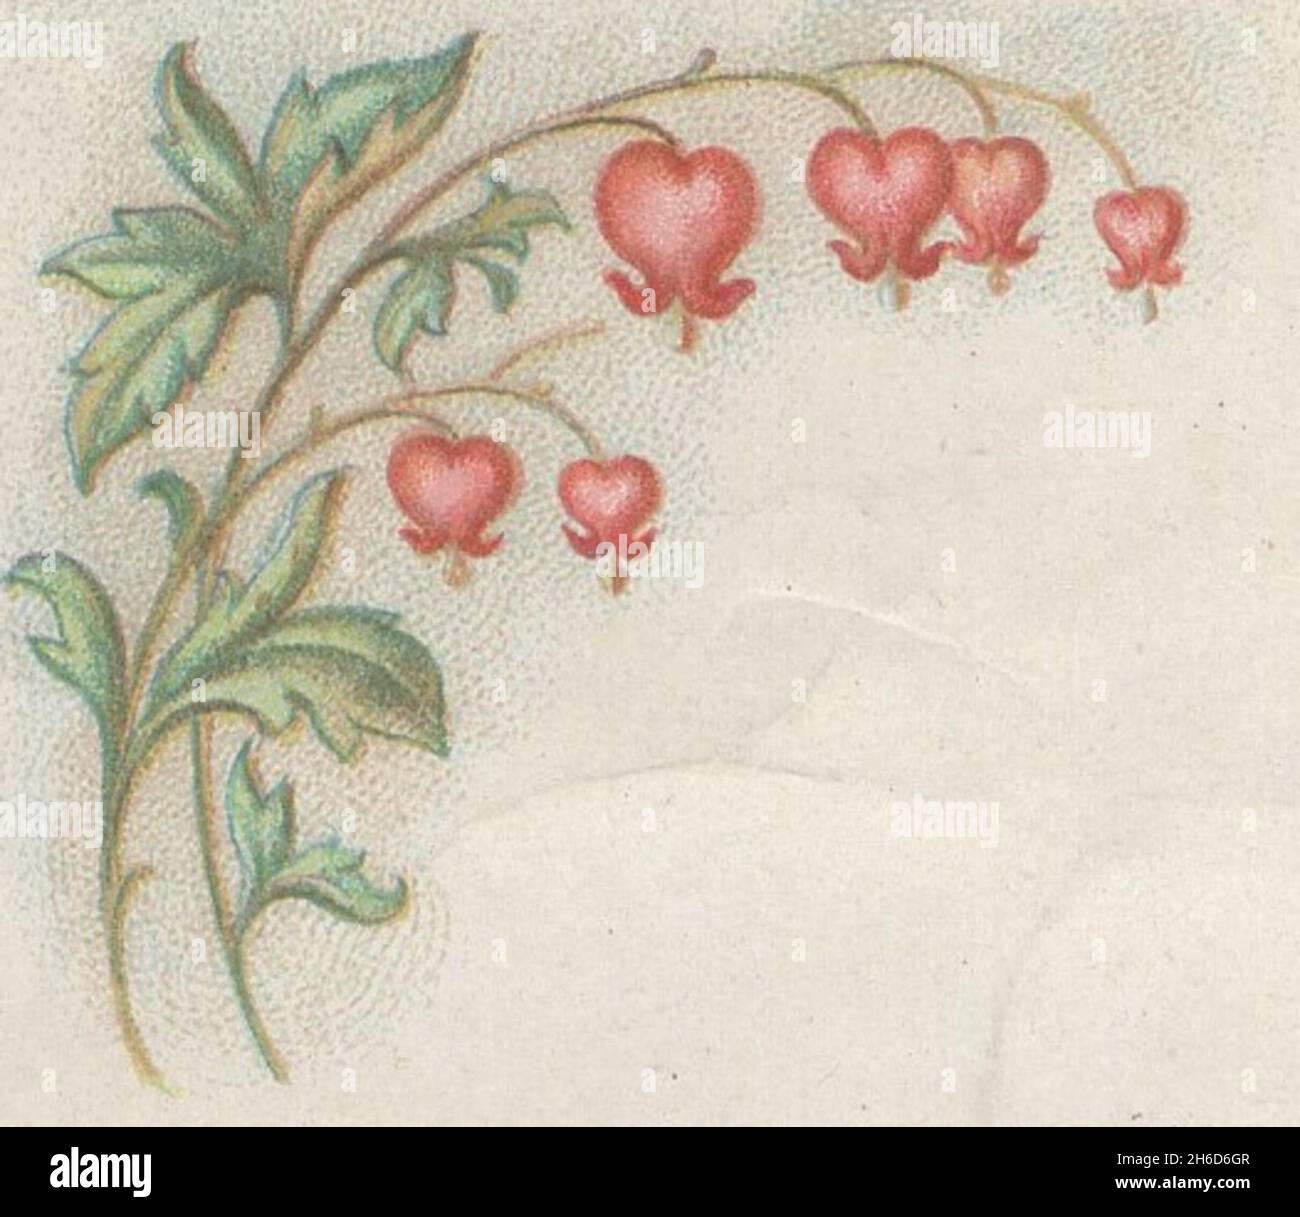 Antiche opere grafiche del XIX secolo di artisti sconosciuti. Bellissimo mazzo di fiori rossi selvatici. Foto Stock